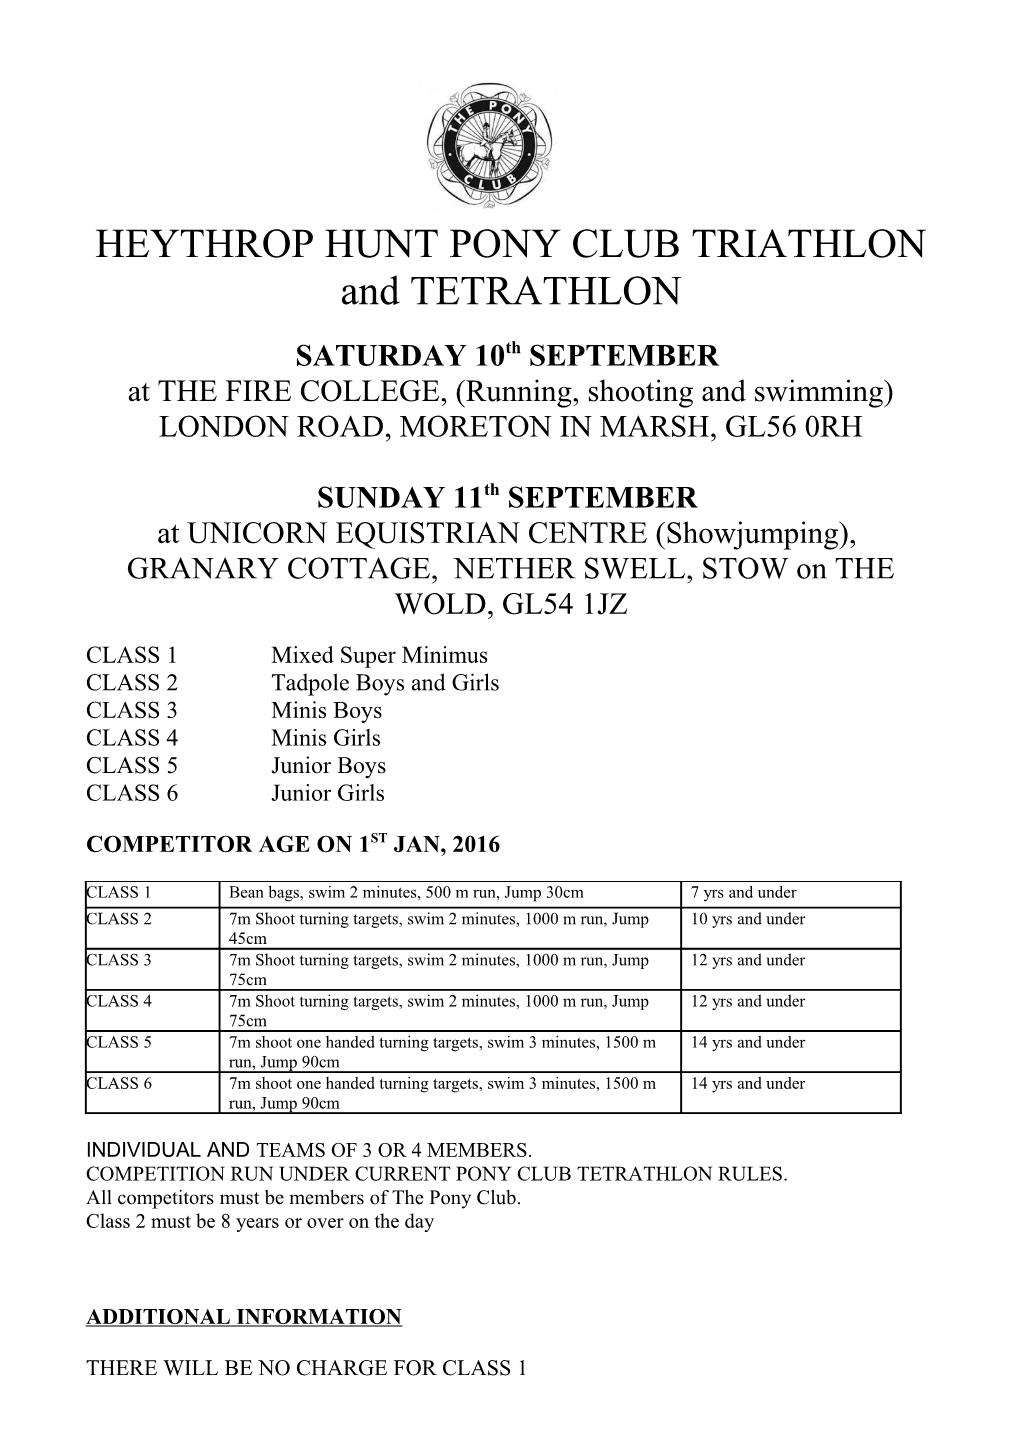 HEYTHROP HUNT PONY CLUB TRIATHLON and TETRATHLON